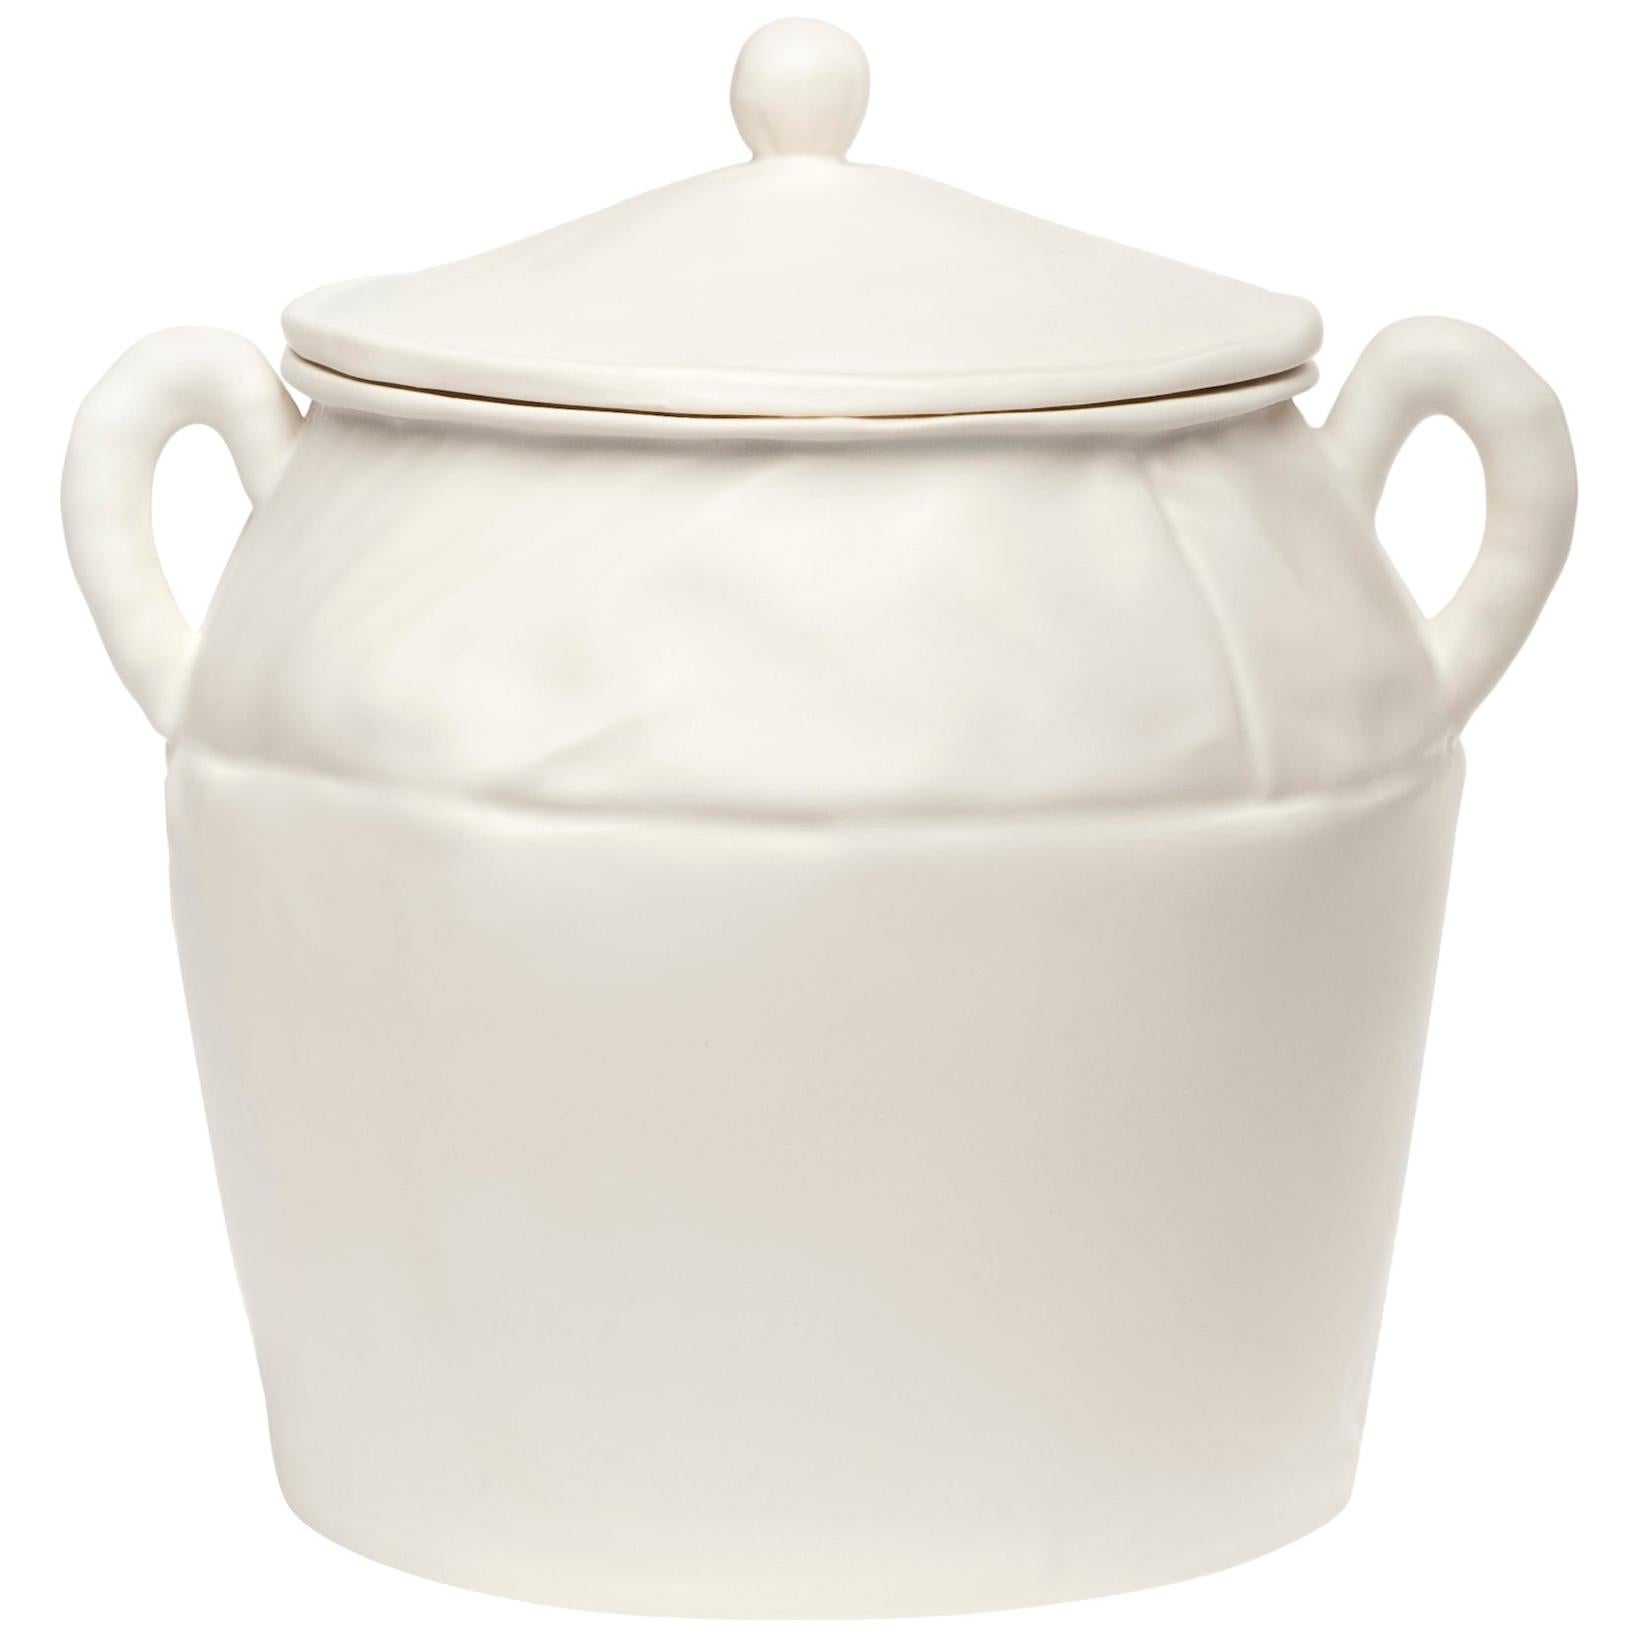 Soft Pot, White Ceramics